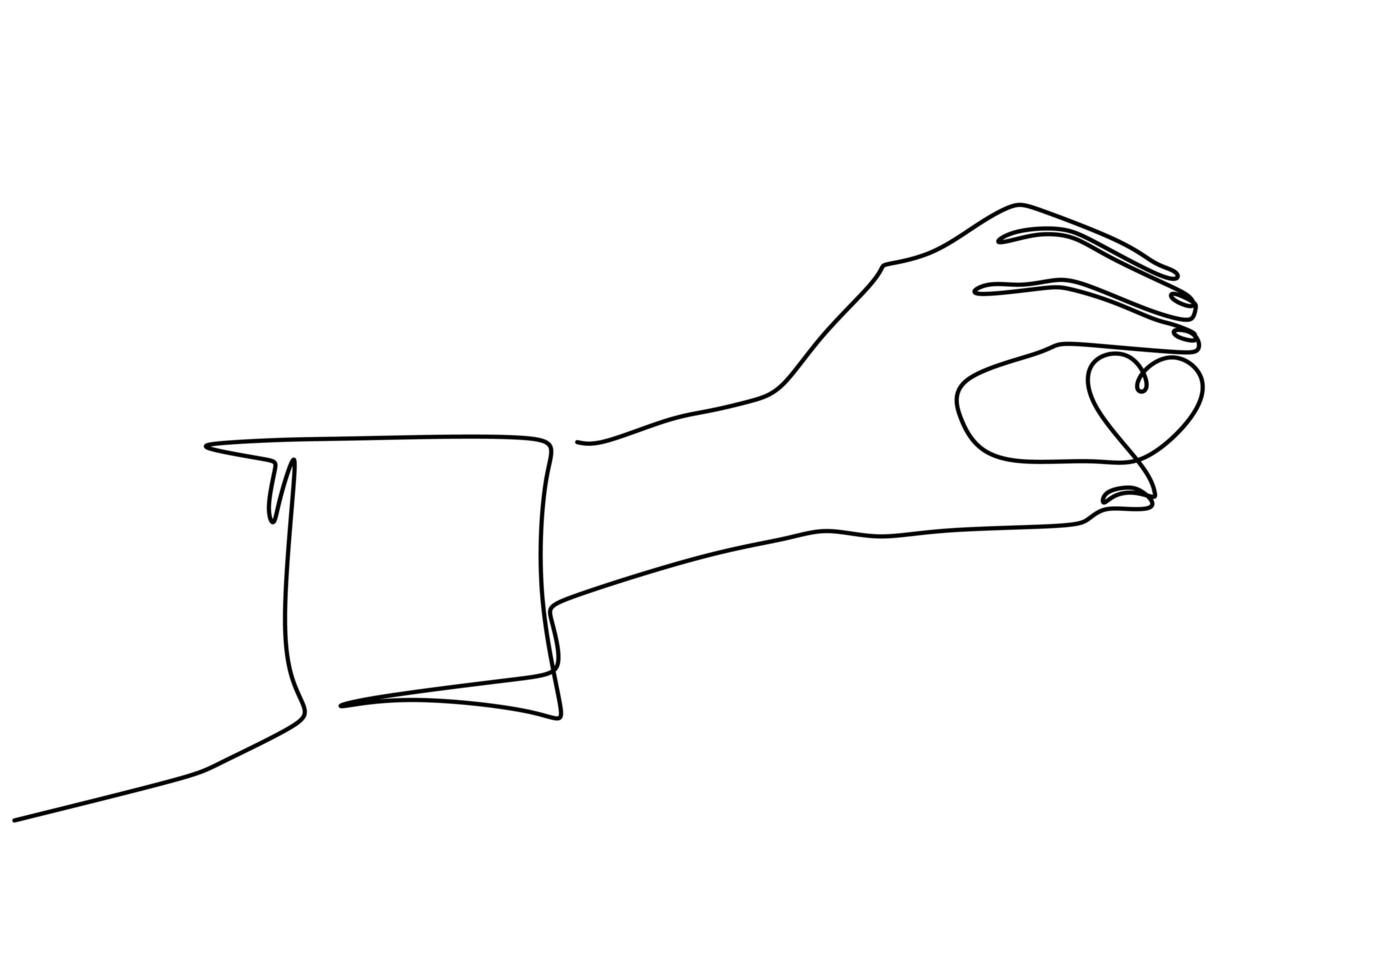 doorlopende lijntekening hand met een stukje hart, een hand getrokken schets vectorillustratie. vector